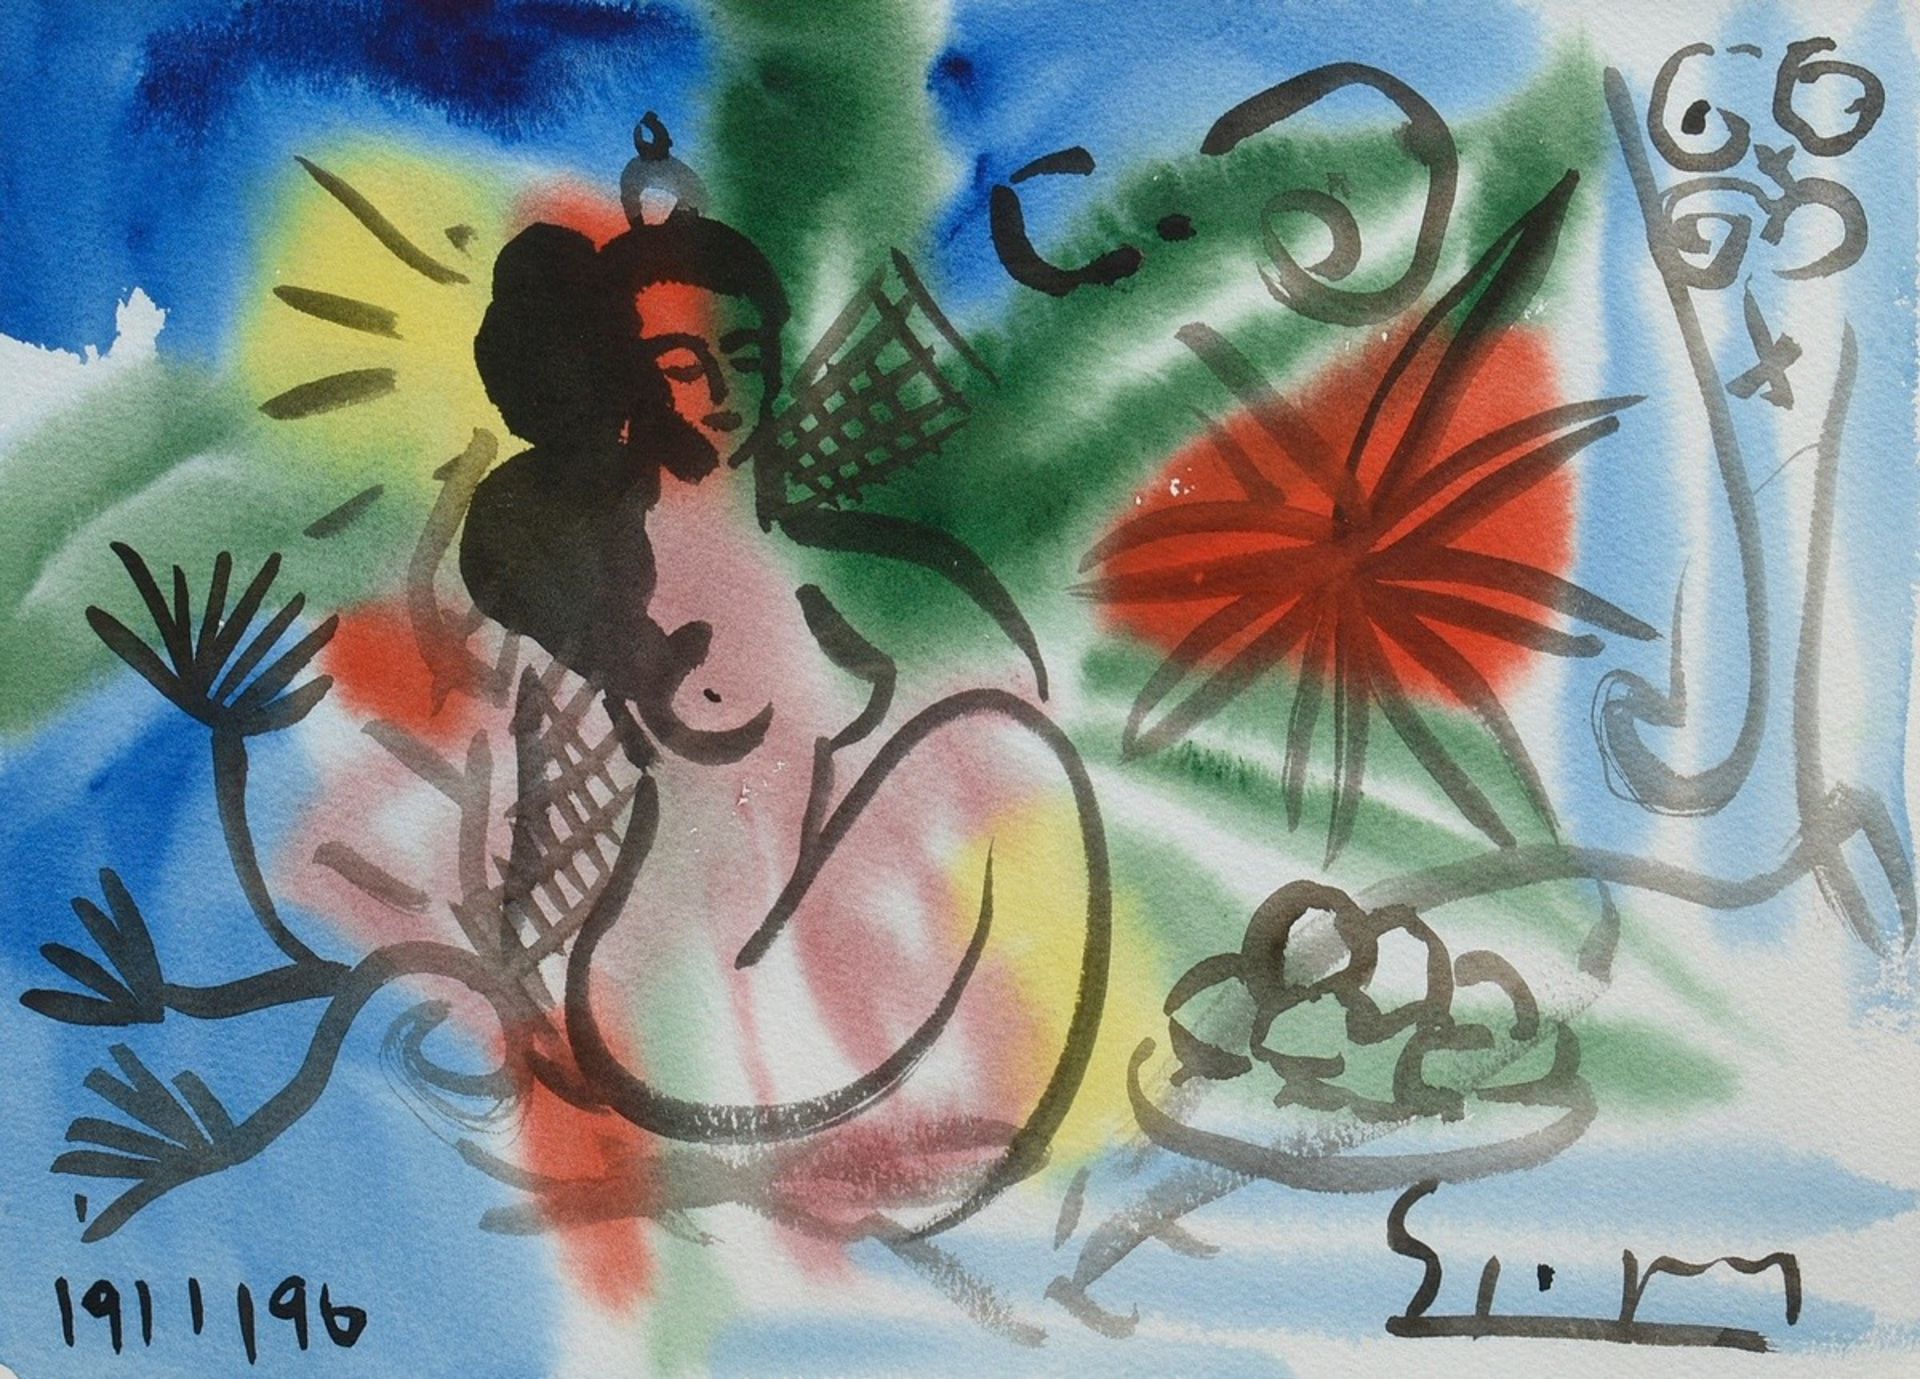 Szczesny, Stefan (*1951) "Nude in the garden" 1996, watercolour, b. dat./sign., free framed, magnif